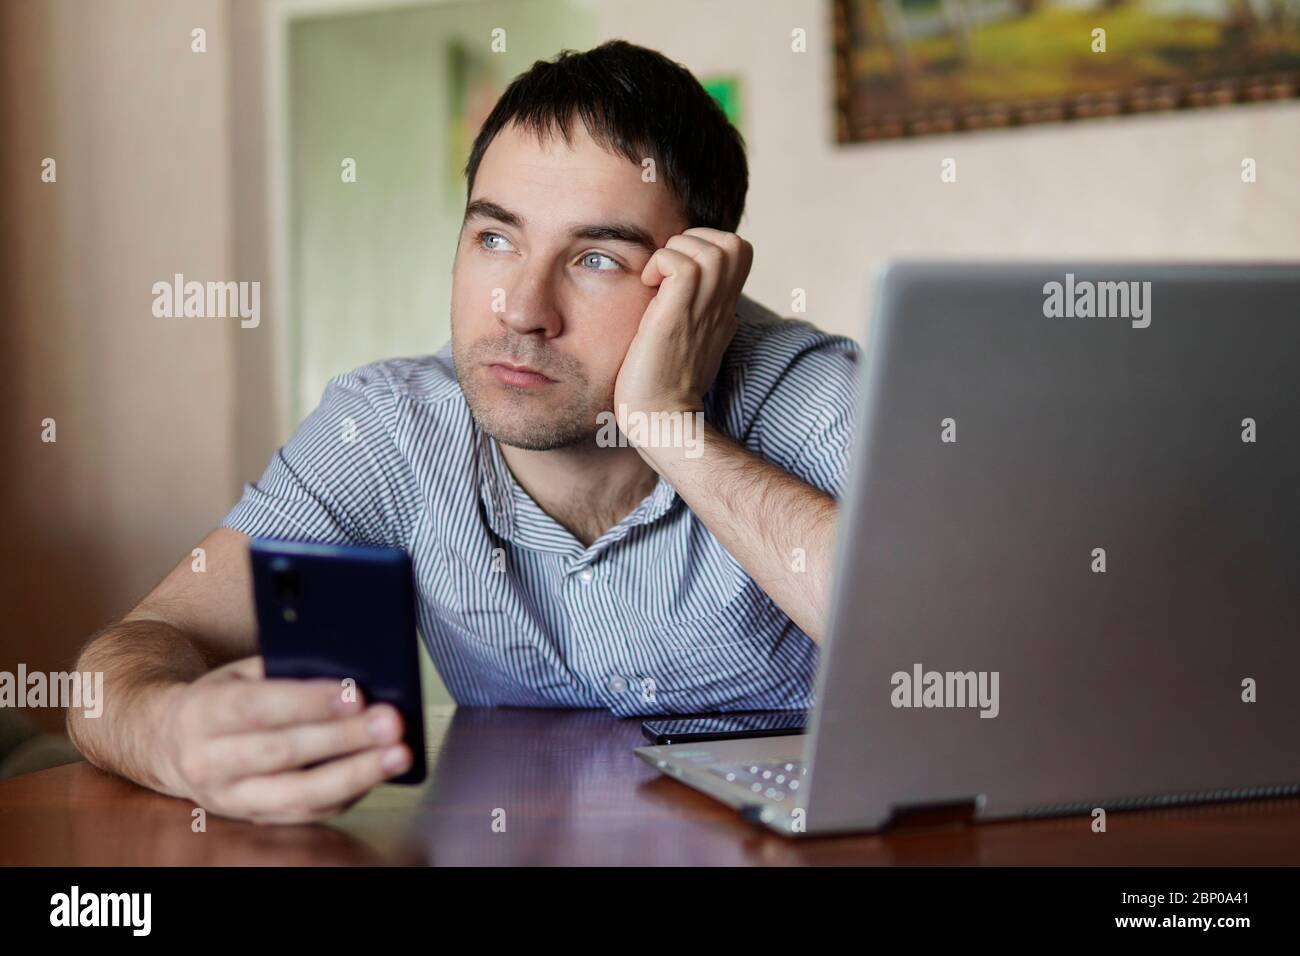 Triste jeune homme mignon tenant un smartphone dans la main un homme travaillant sur un ordinateur portable à distance. Fatigue de la quarantaine, auto-isolement. Banque D'Images